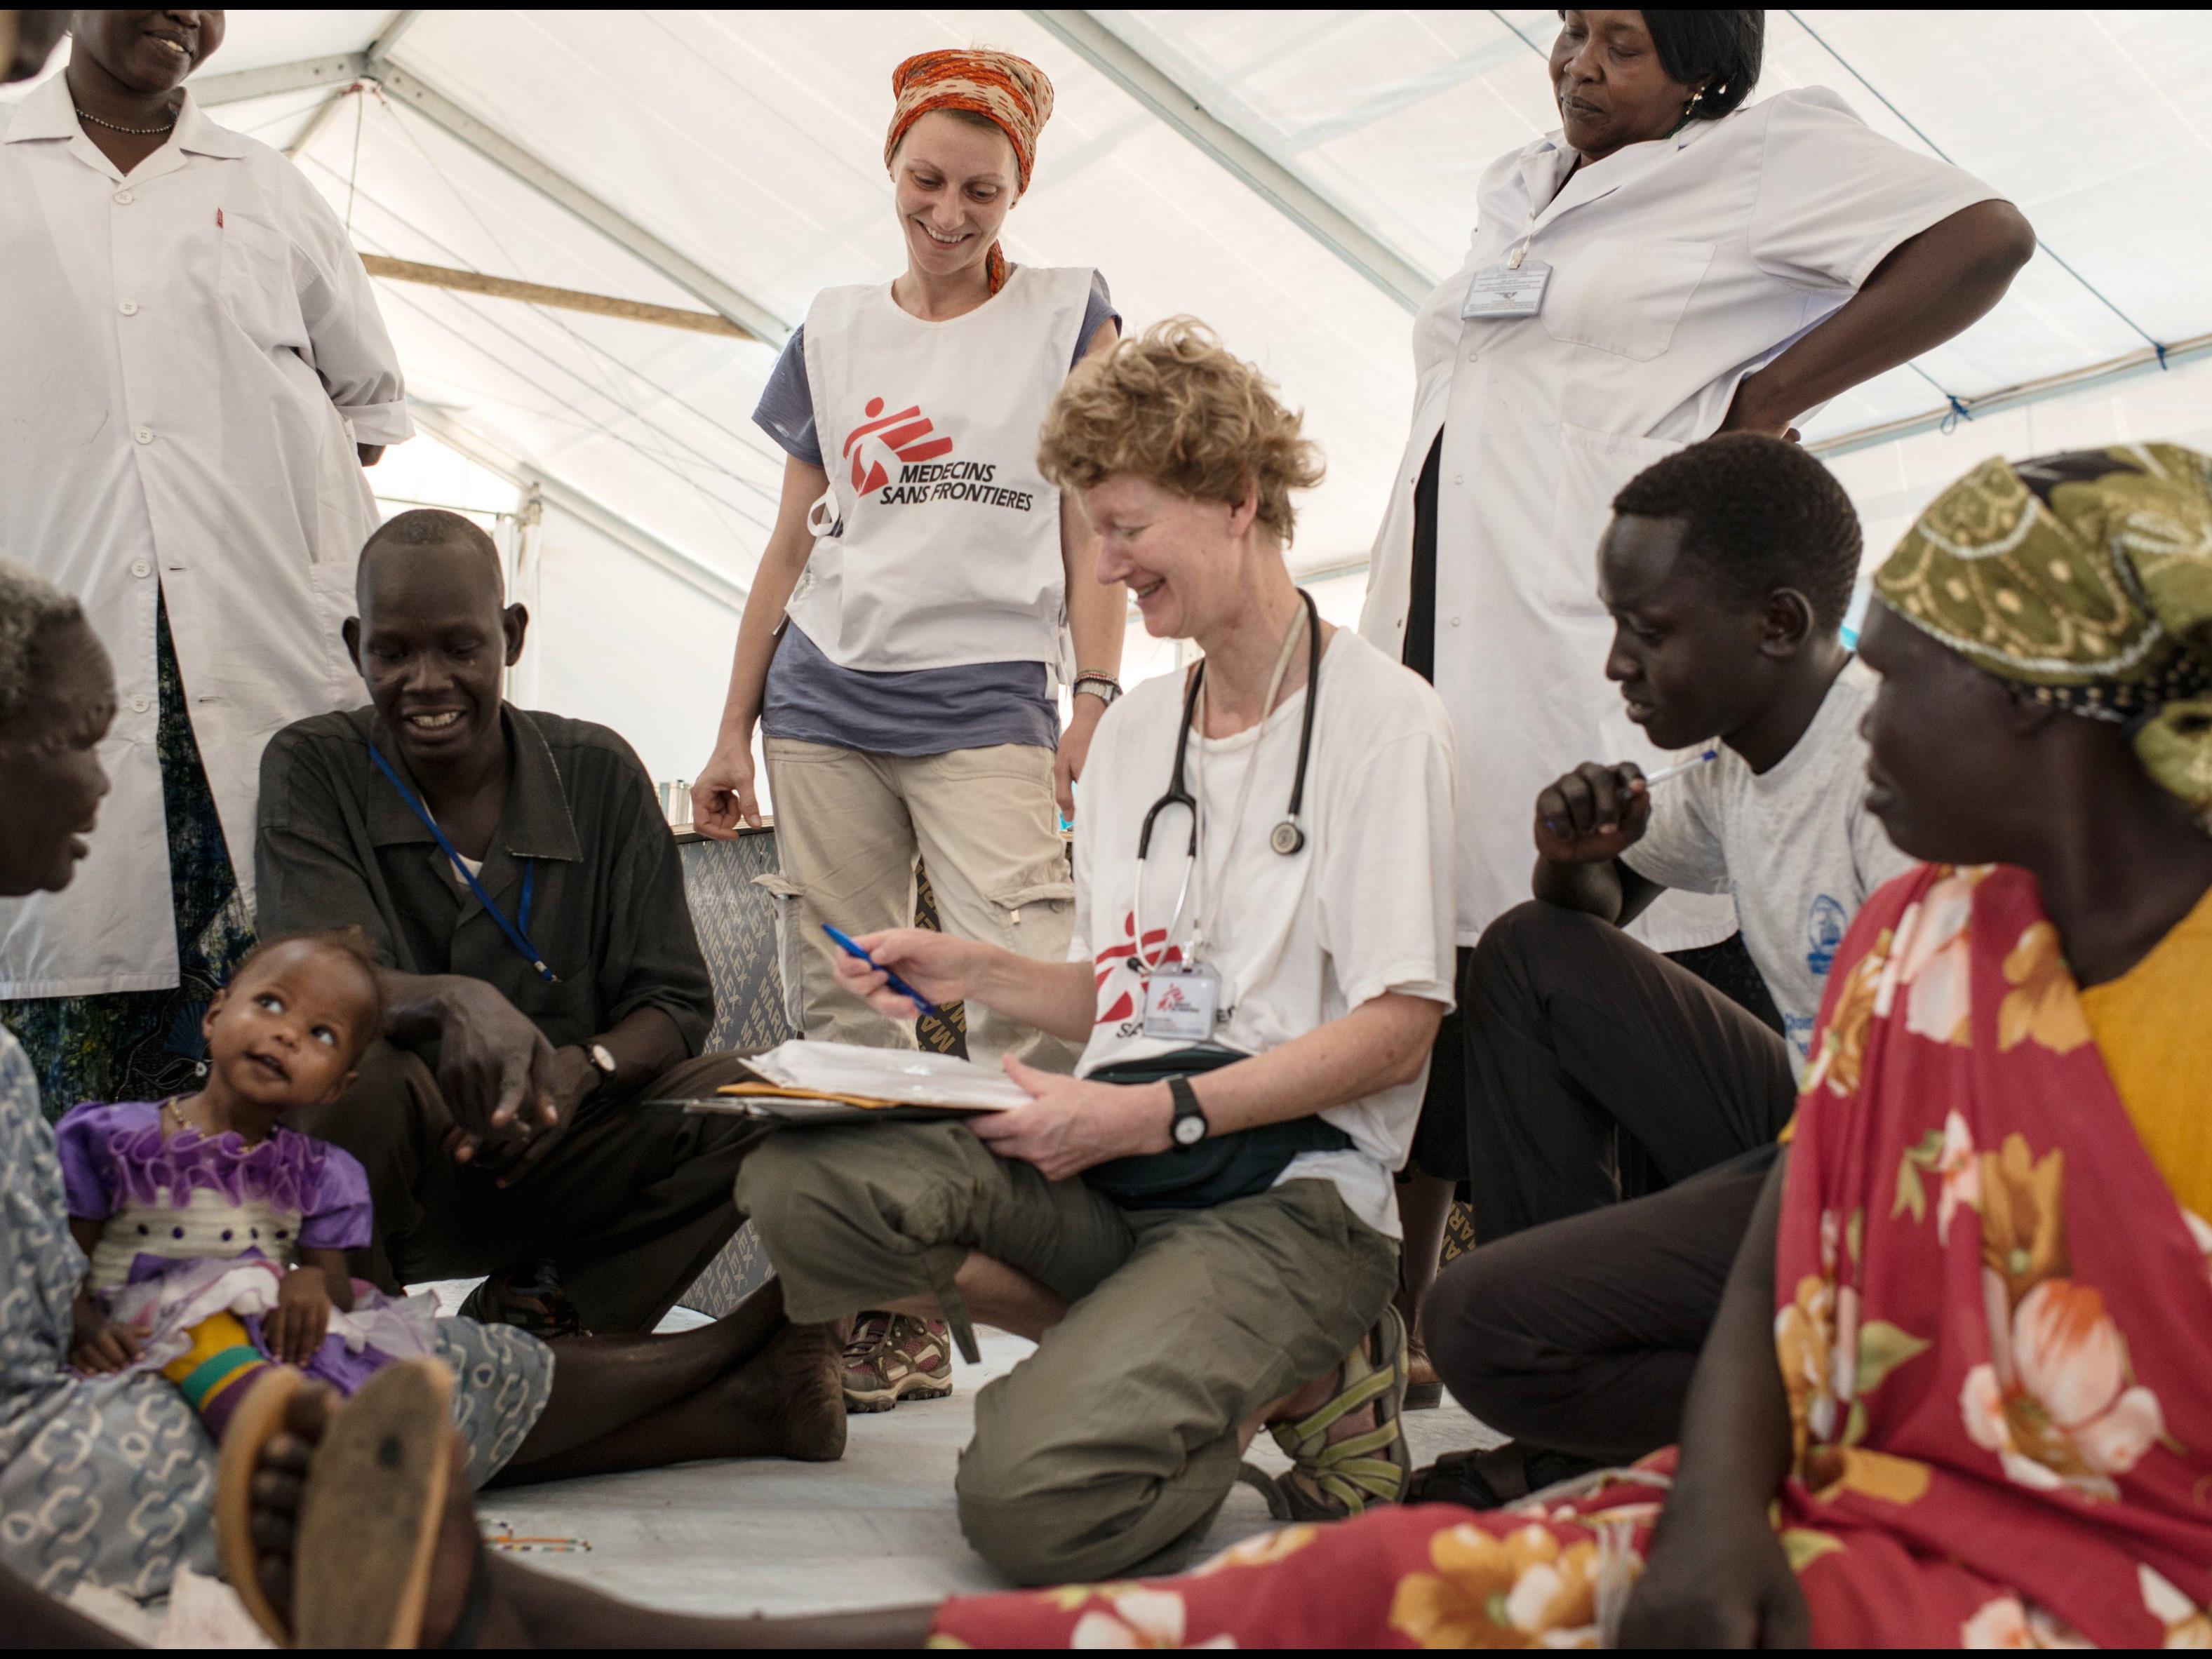 Ärzte ohne Grenzen leistet weltweit bei Naturkatastrophen, bewaffneten Konflikten, Epidemien und in Flüchtlingslagern medizinische Nothilfe.